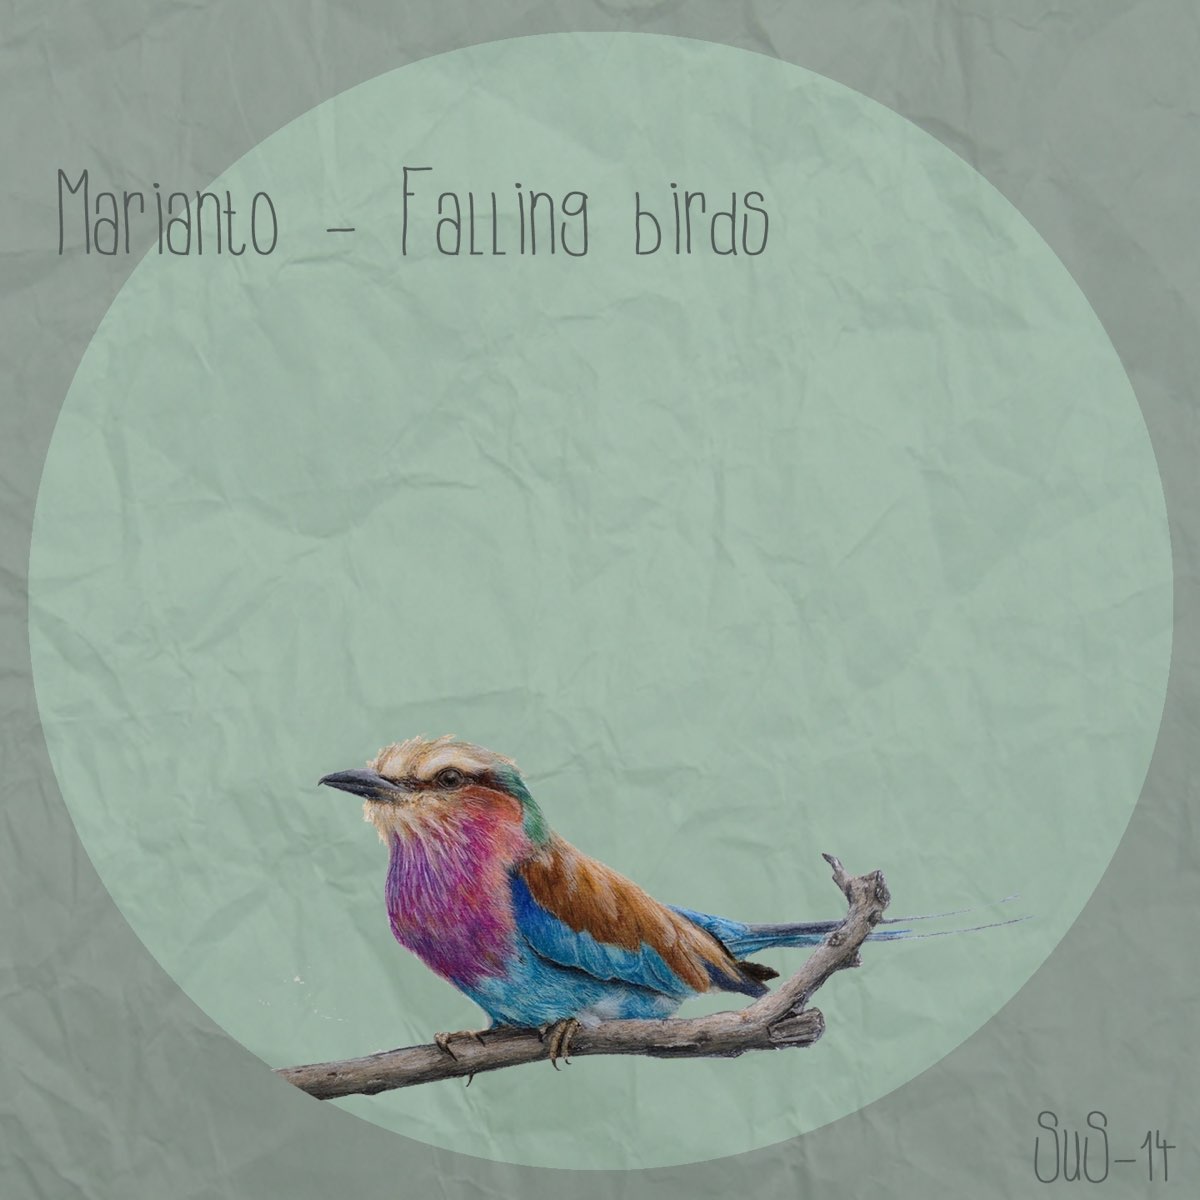 Fallen Bird Prince Canary. Birds text Creative.